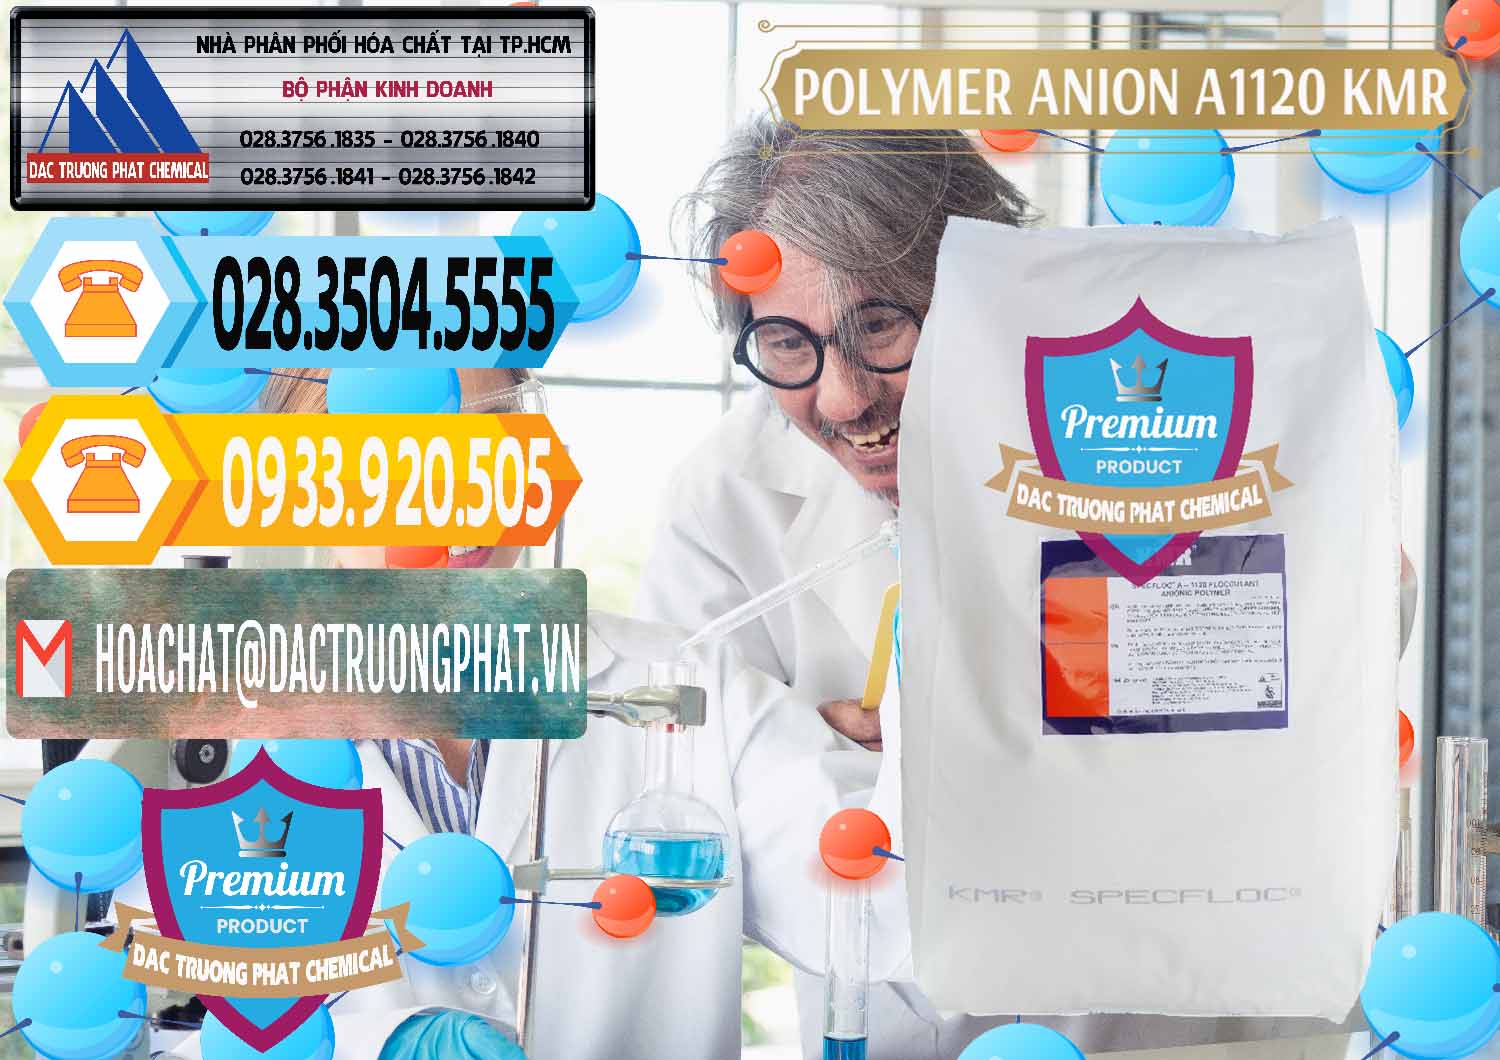 Nơi cung cấp - bán Polymer Anion A1120 - KMR Anh Quốc England - 0119 - Phân phối - kinh doanh hóa chất tại TP.HCM - hoachattayrua.net